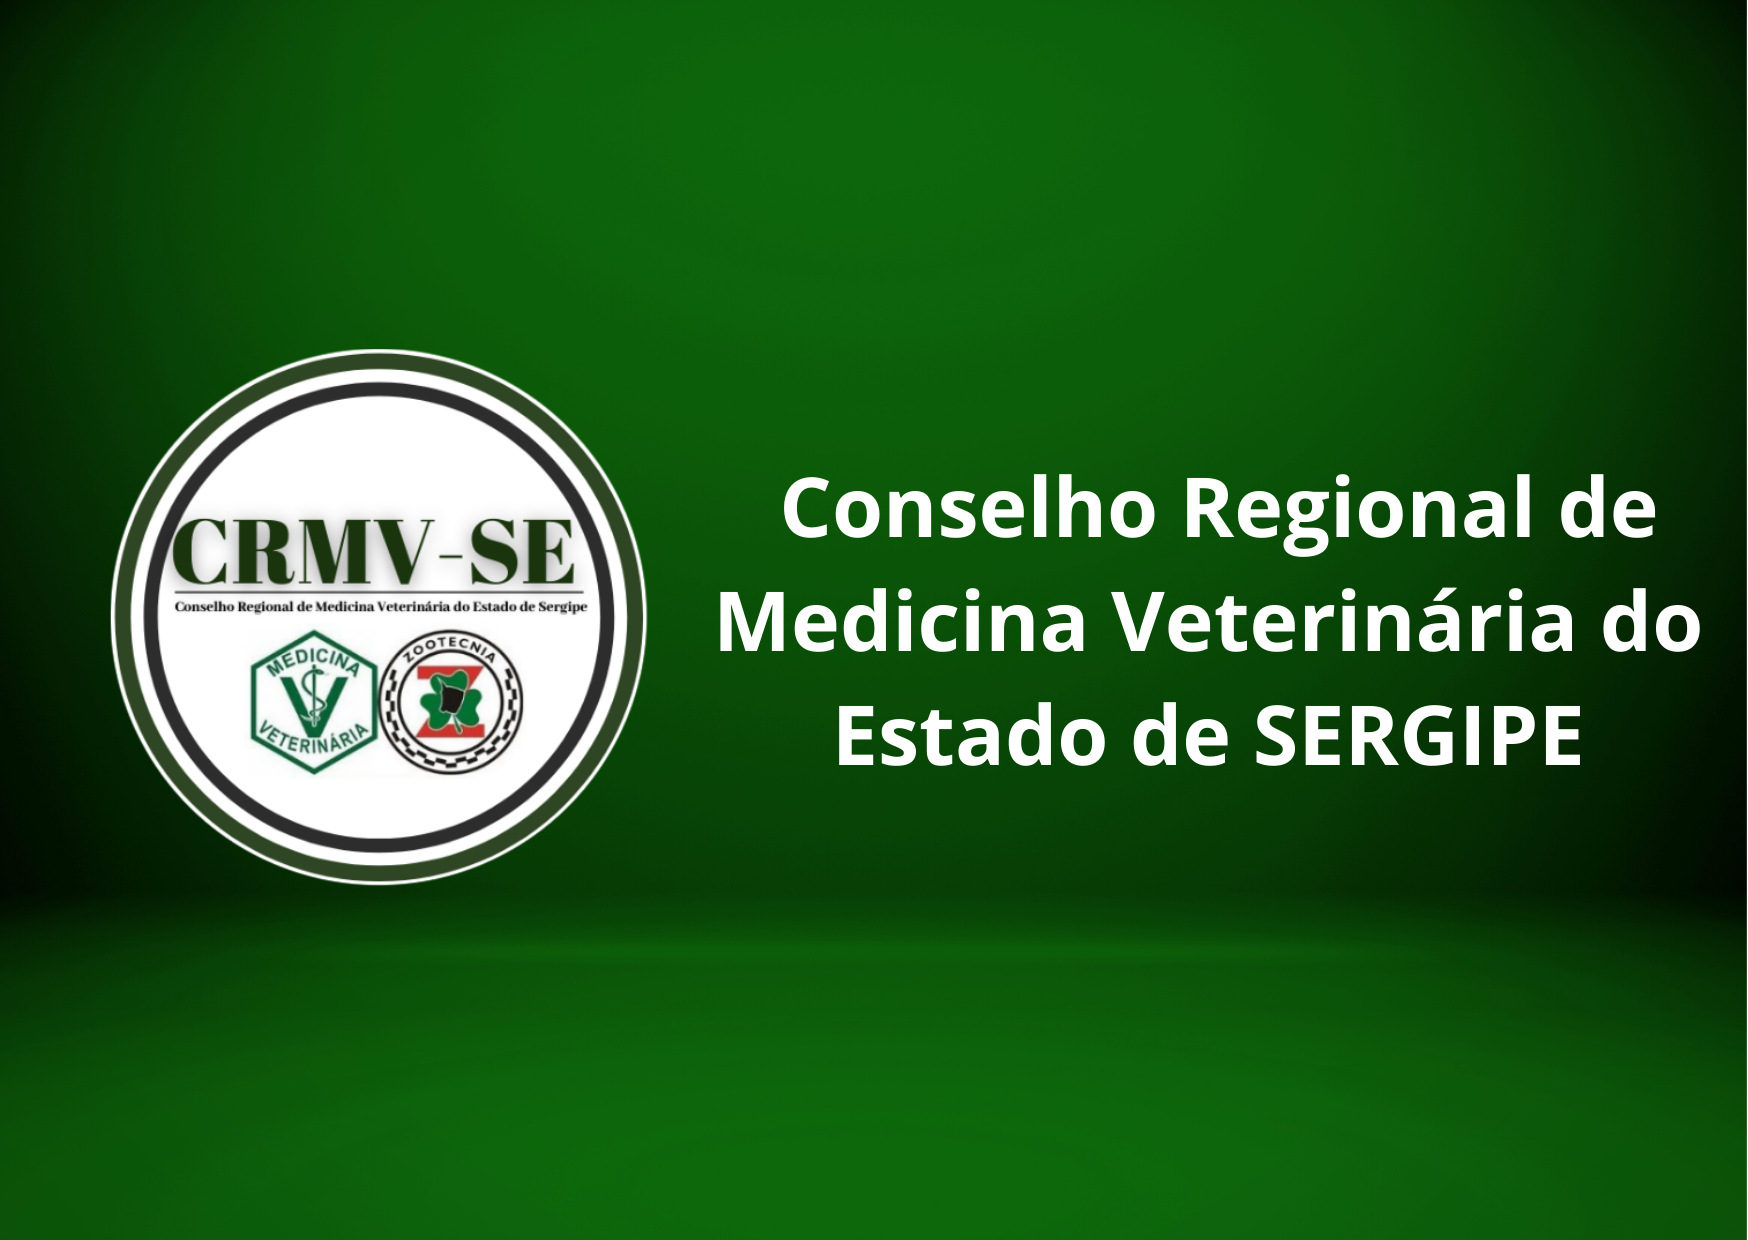 Conselho Regional de Medicina Veterinária do Estado de SERGIPE